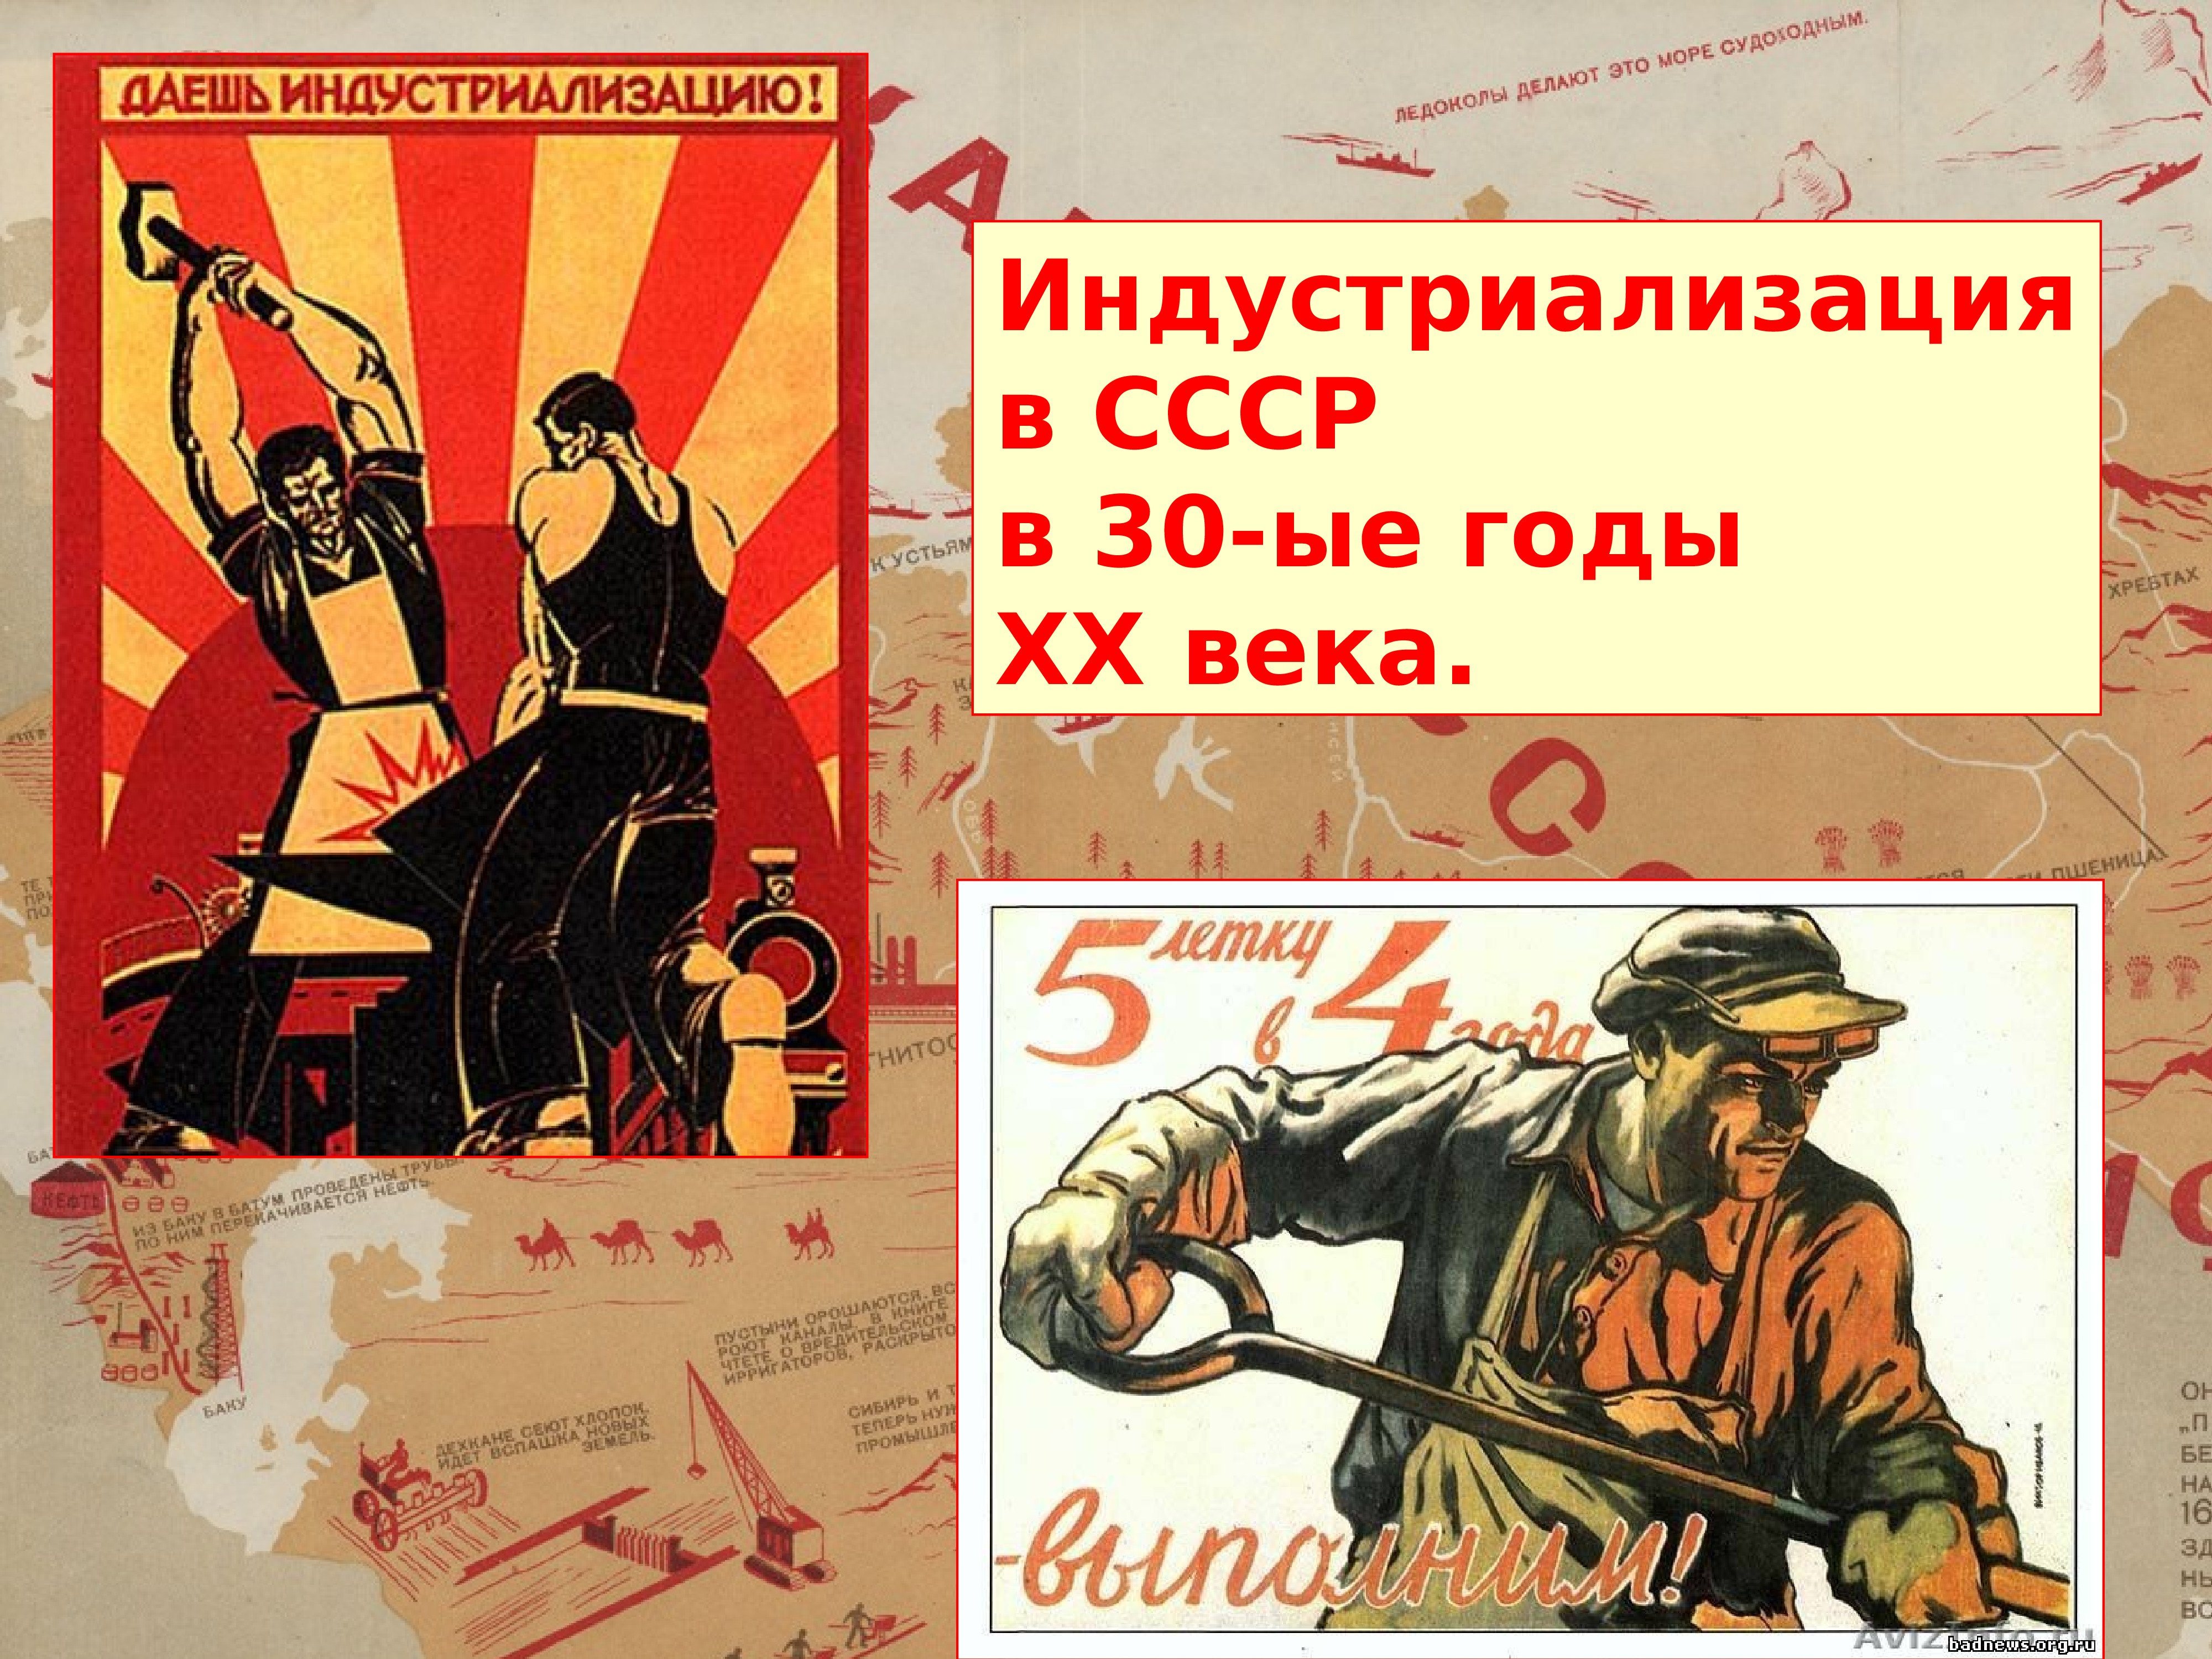 Рассмотри советские плакаты 20 30 годов. Индустриализация. Индустриализация в СССР плакаты. Индустриализация 1920-1930 плакат. Индустриализация в СССР 20-30 годы.